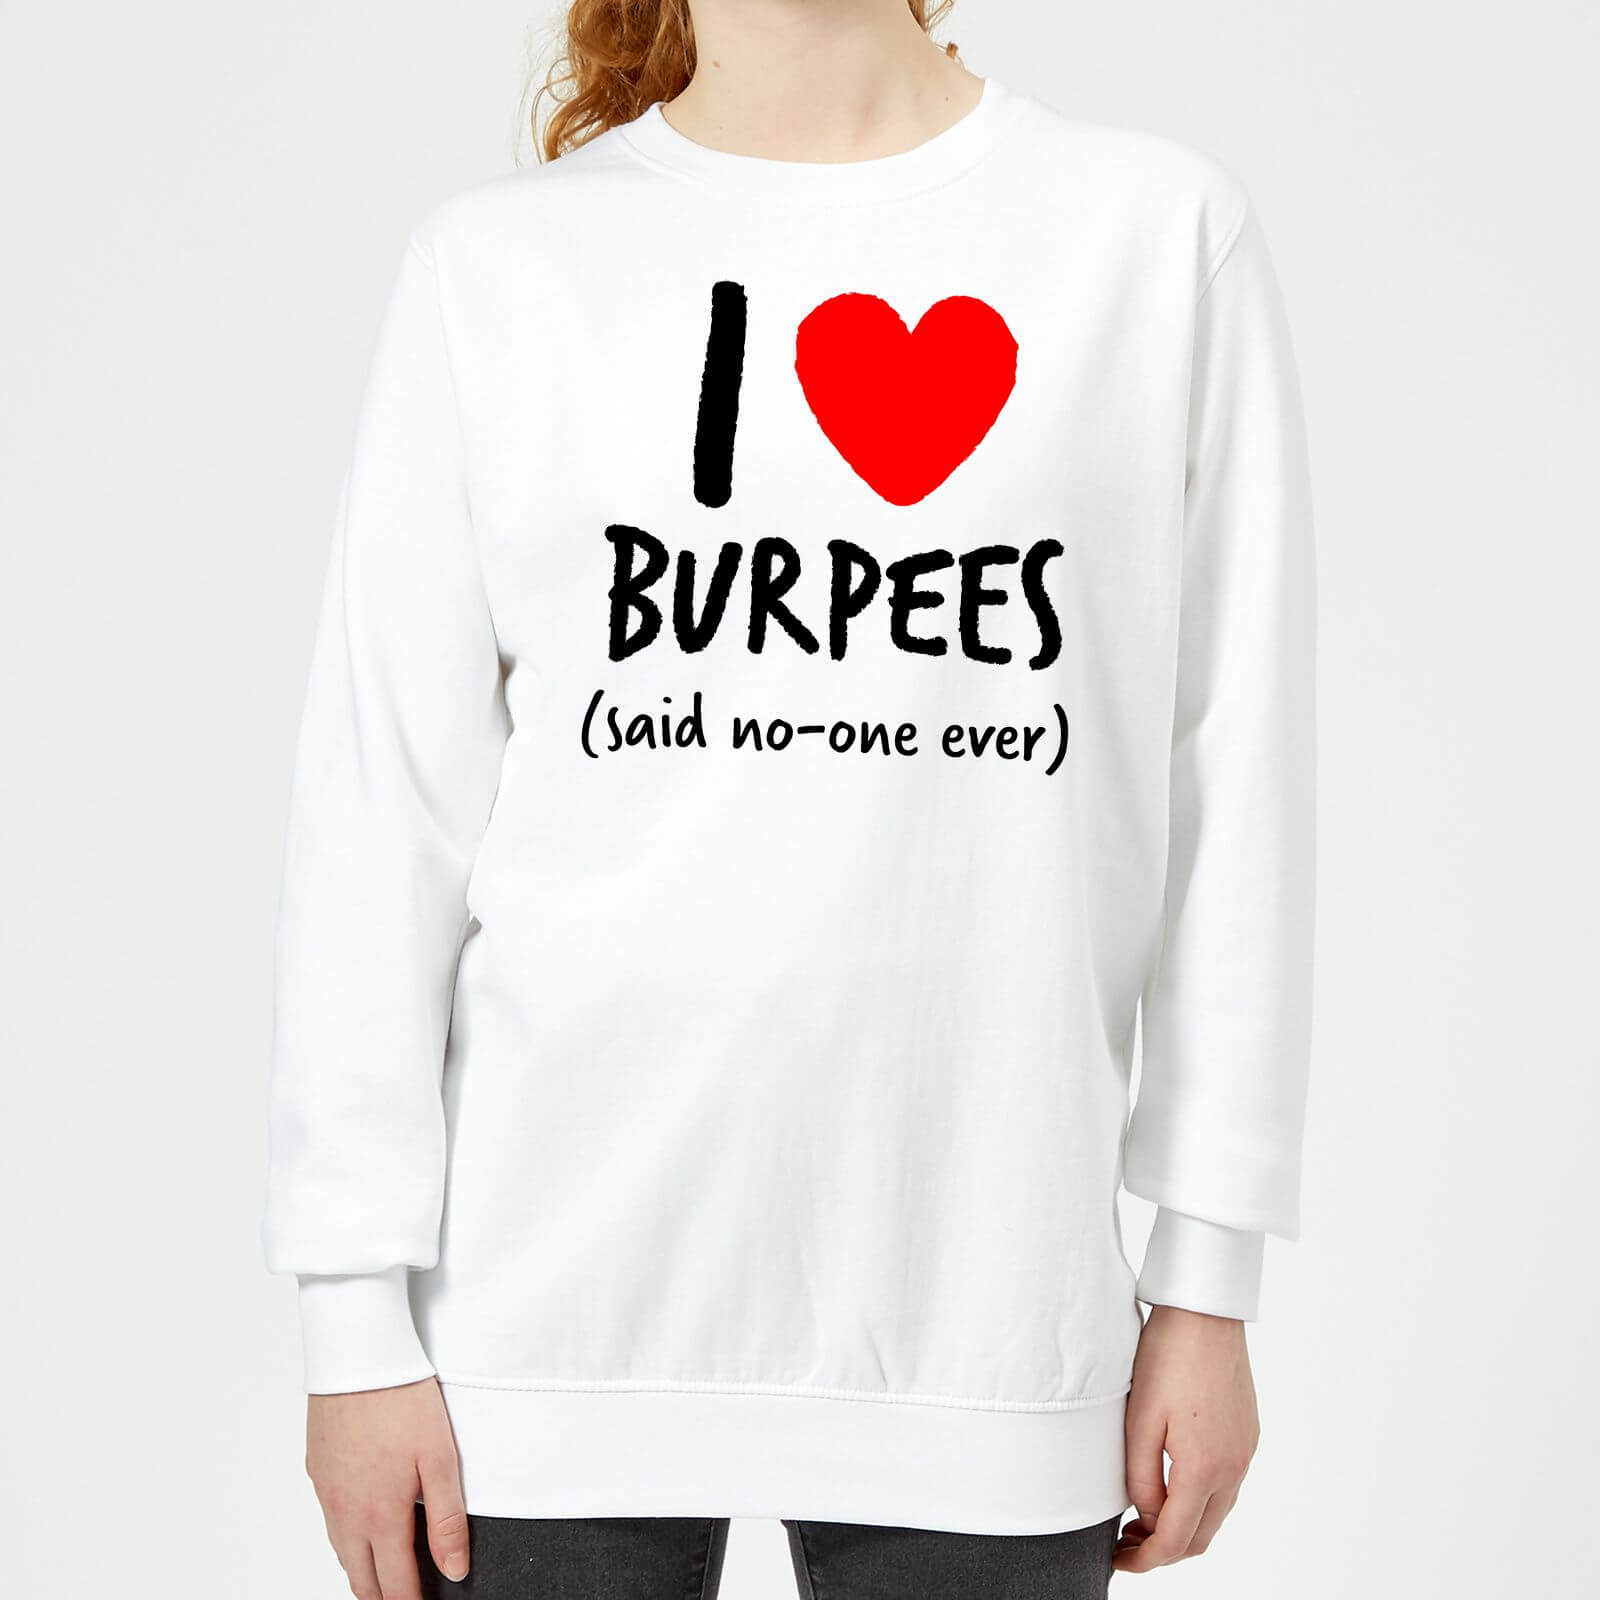 I love burpees Women's Sweatshirt - White - M - White